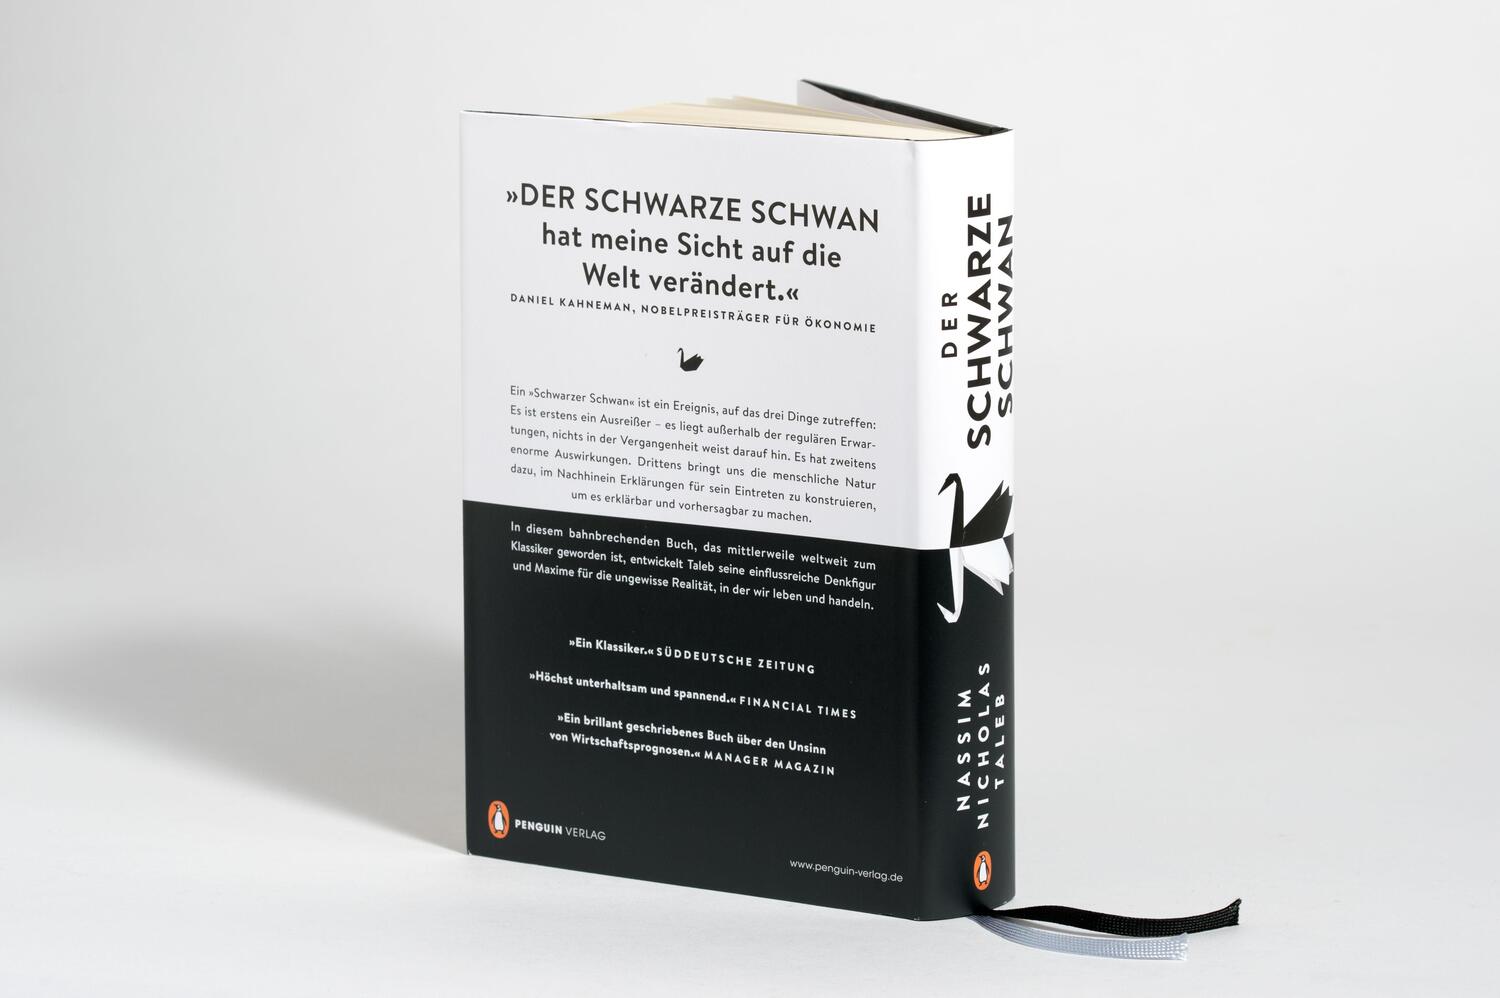 Bild: 9783328602095 | Der Schwarze Schwan | Nassim Nicholas Taleb | Buch | Deutsch | 2020